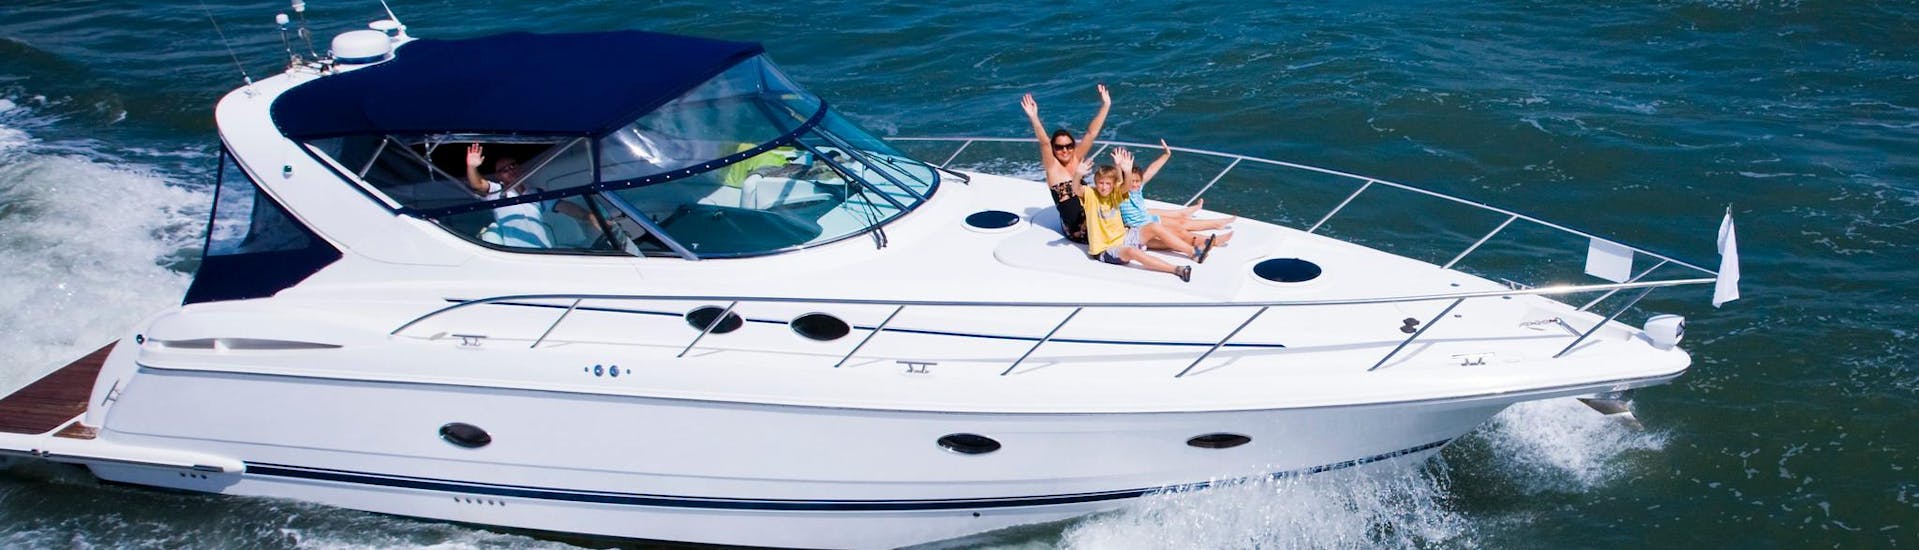 Eine Mutter und Ihre zwei Kinder haben Spaß während einer Yacht-Tour